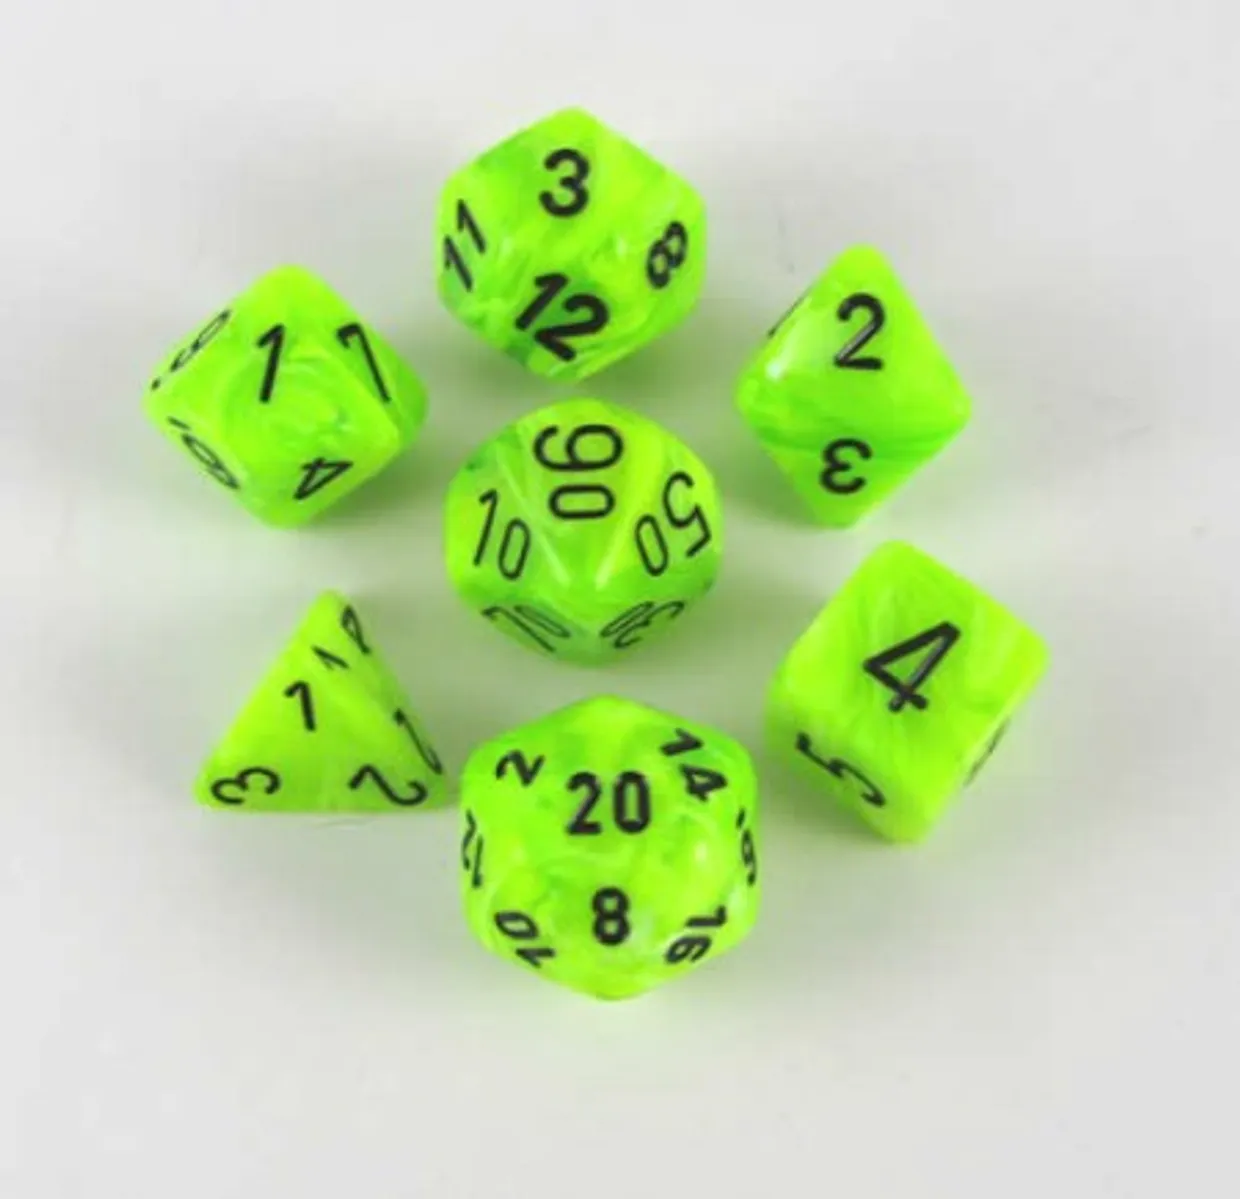 Vortex Bright Green/Black Polyhedral Dobbelsteen Set (7 stuks)